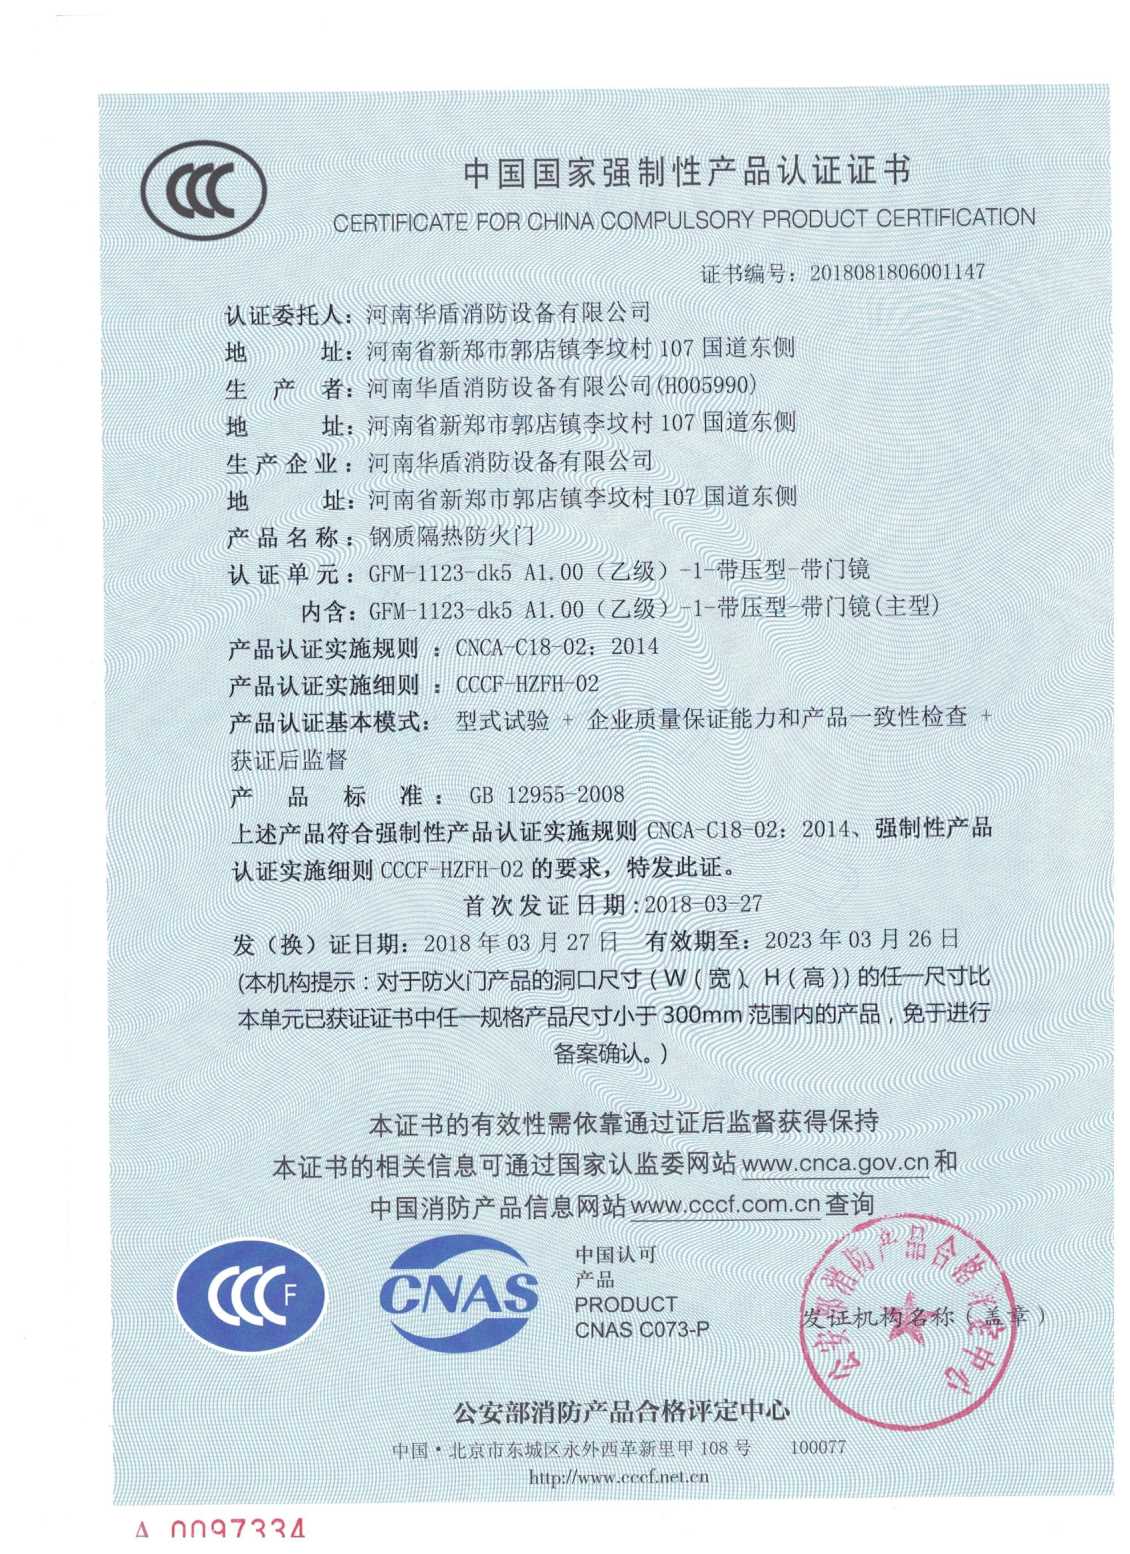 陕西GFM-1123-dk5A1.00(乙级）-1-3C证书